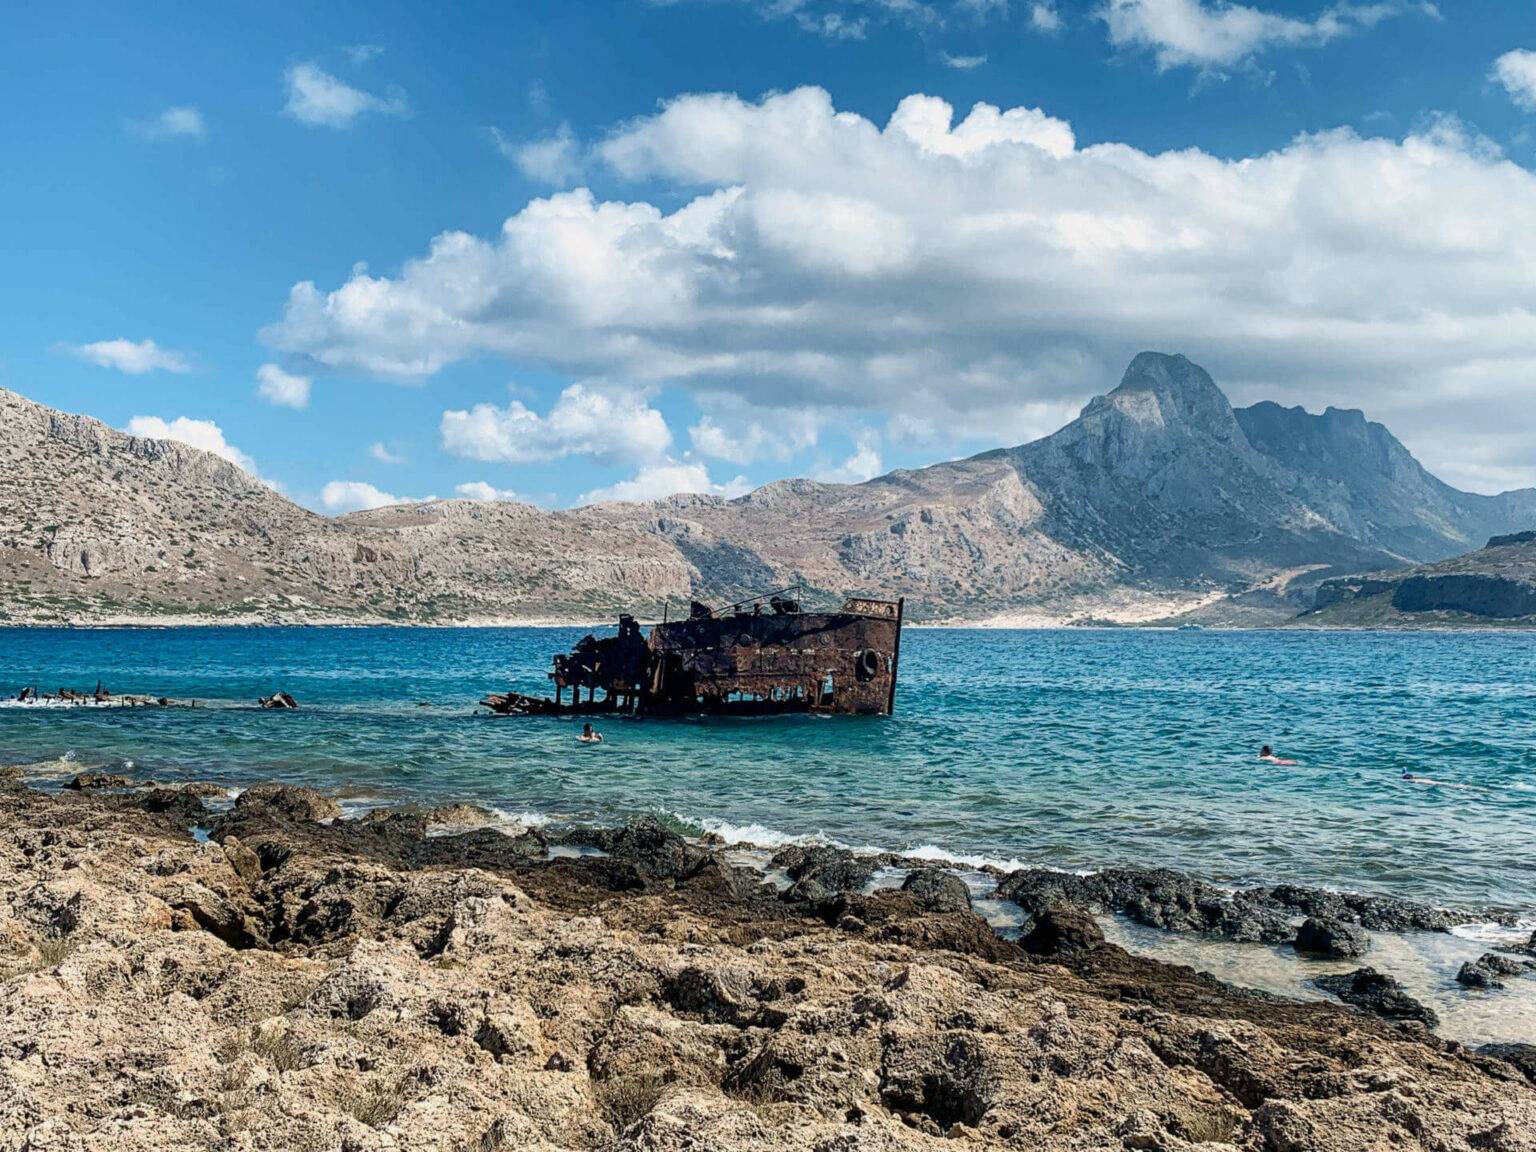 Geheimtipp auf Kreta: Das verrostete Schiffswrack auf der Pirateninsel Gramvousa liegt auf türkisblauem Wasser, im Hintergrund erheben sich die Berge der Insel.